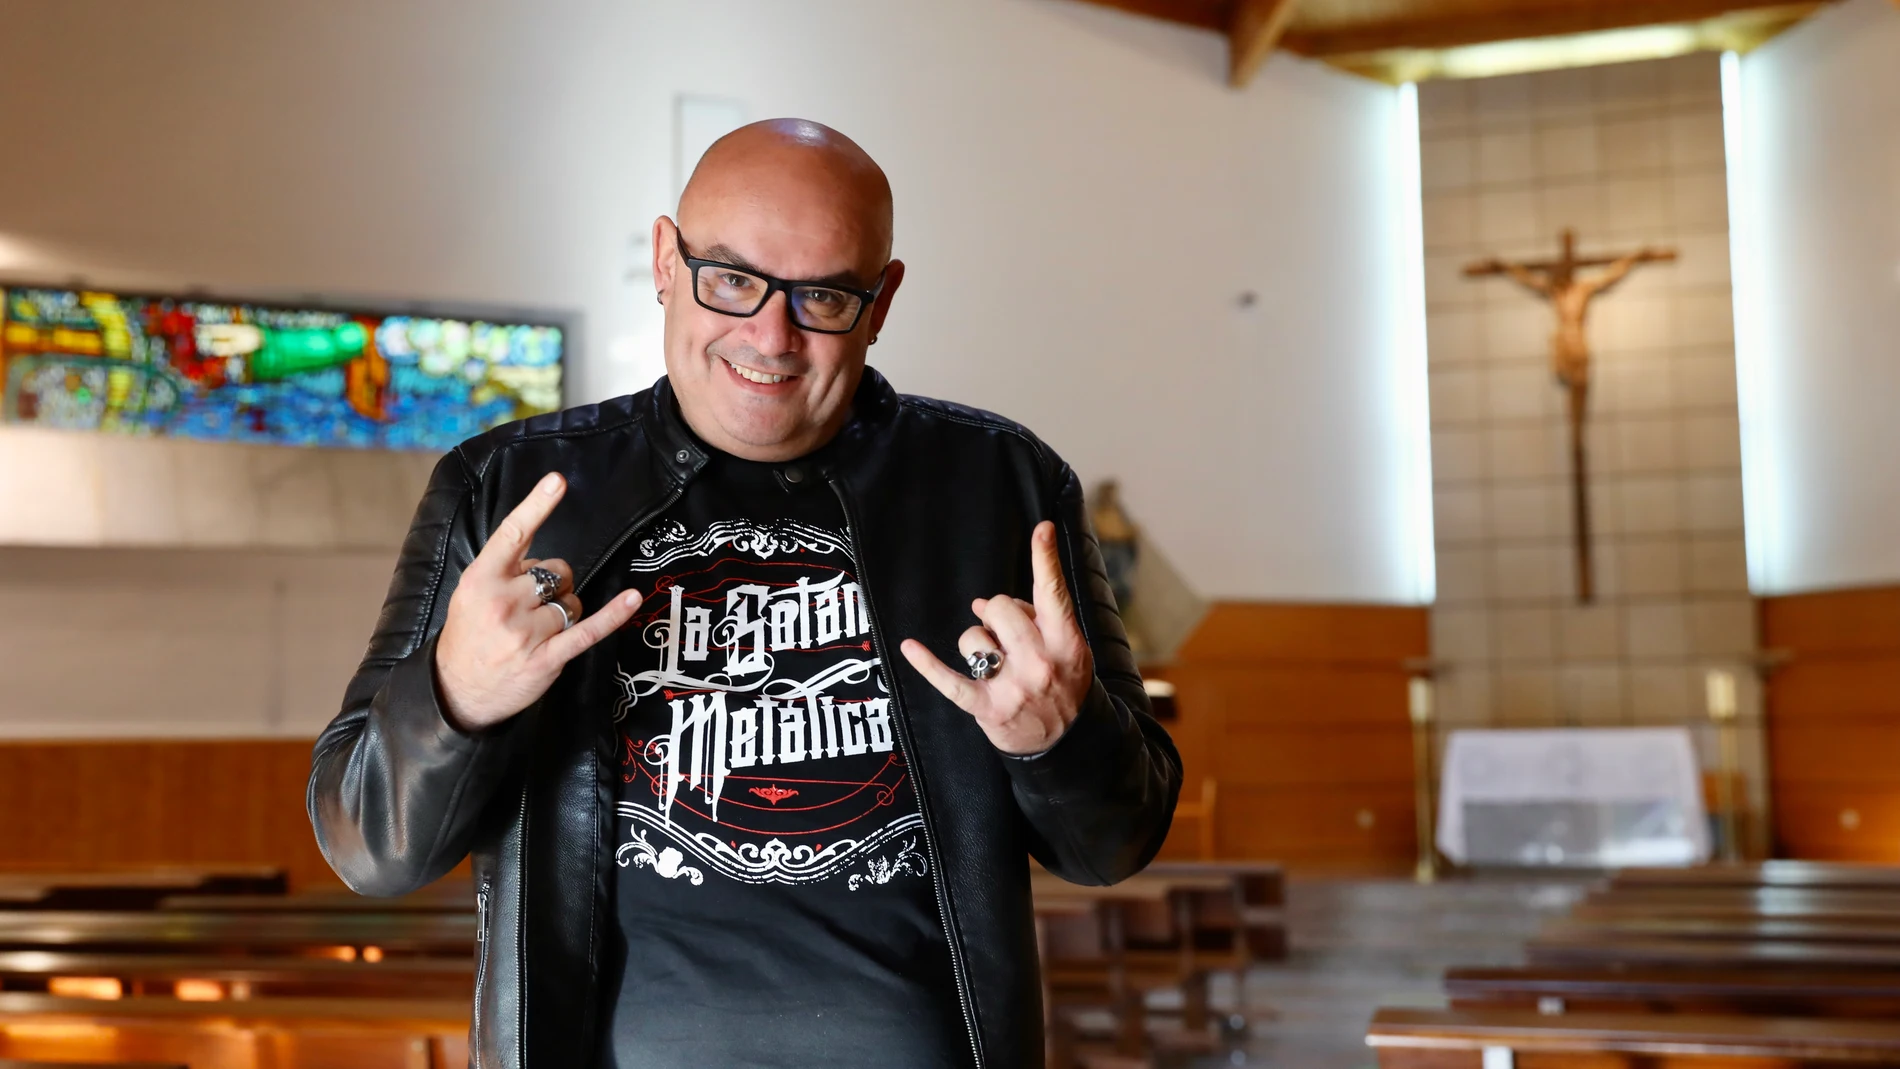 Vicente Esplugues, sacerdote aficionado a la música heavy metal.